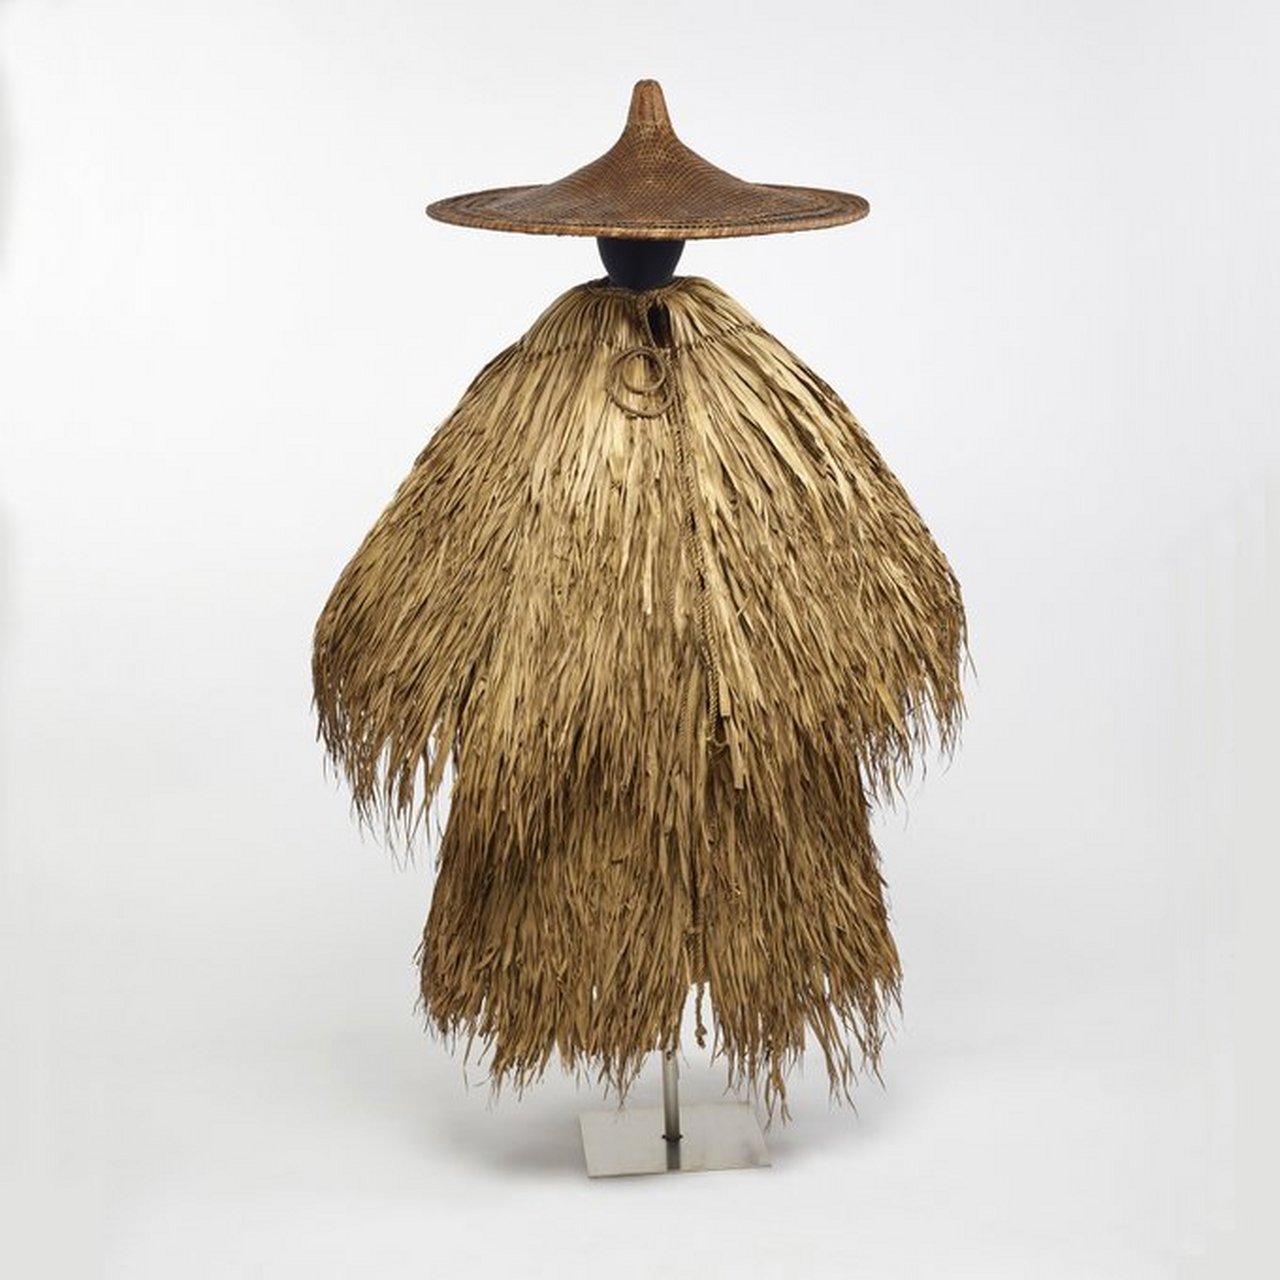 一件中国古代雨披,一般由棕榈叶子制成,形式像茅草屋顶一样密密麻麻地